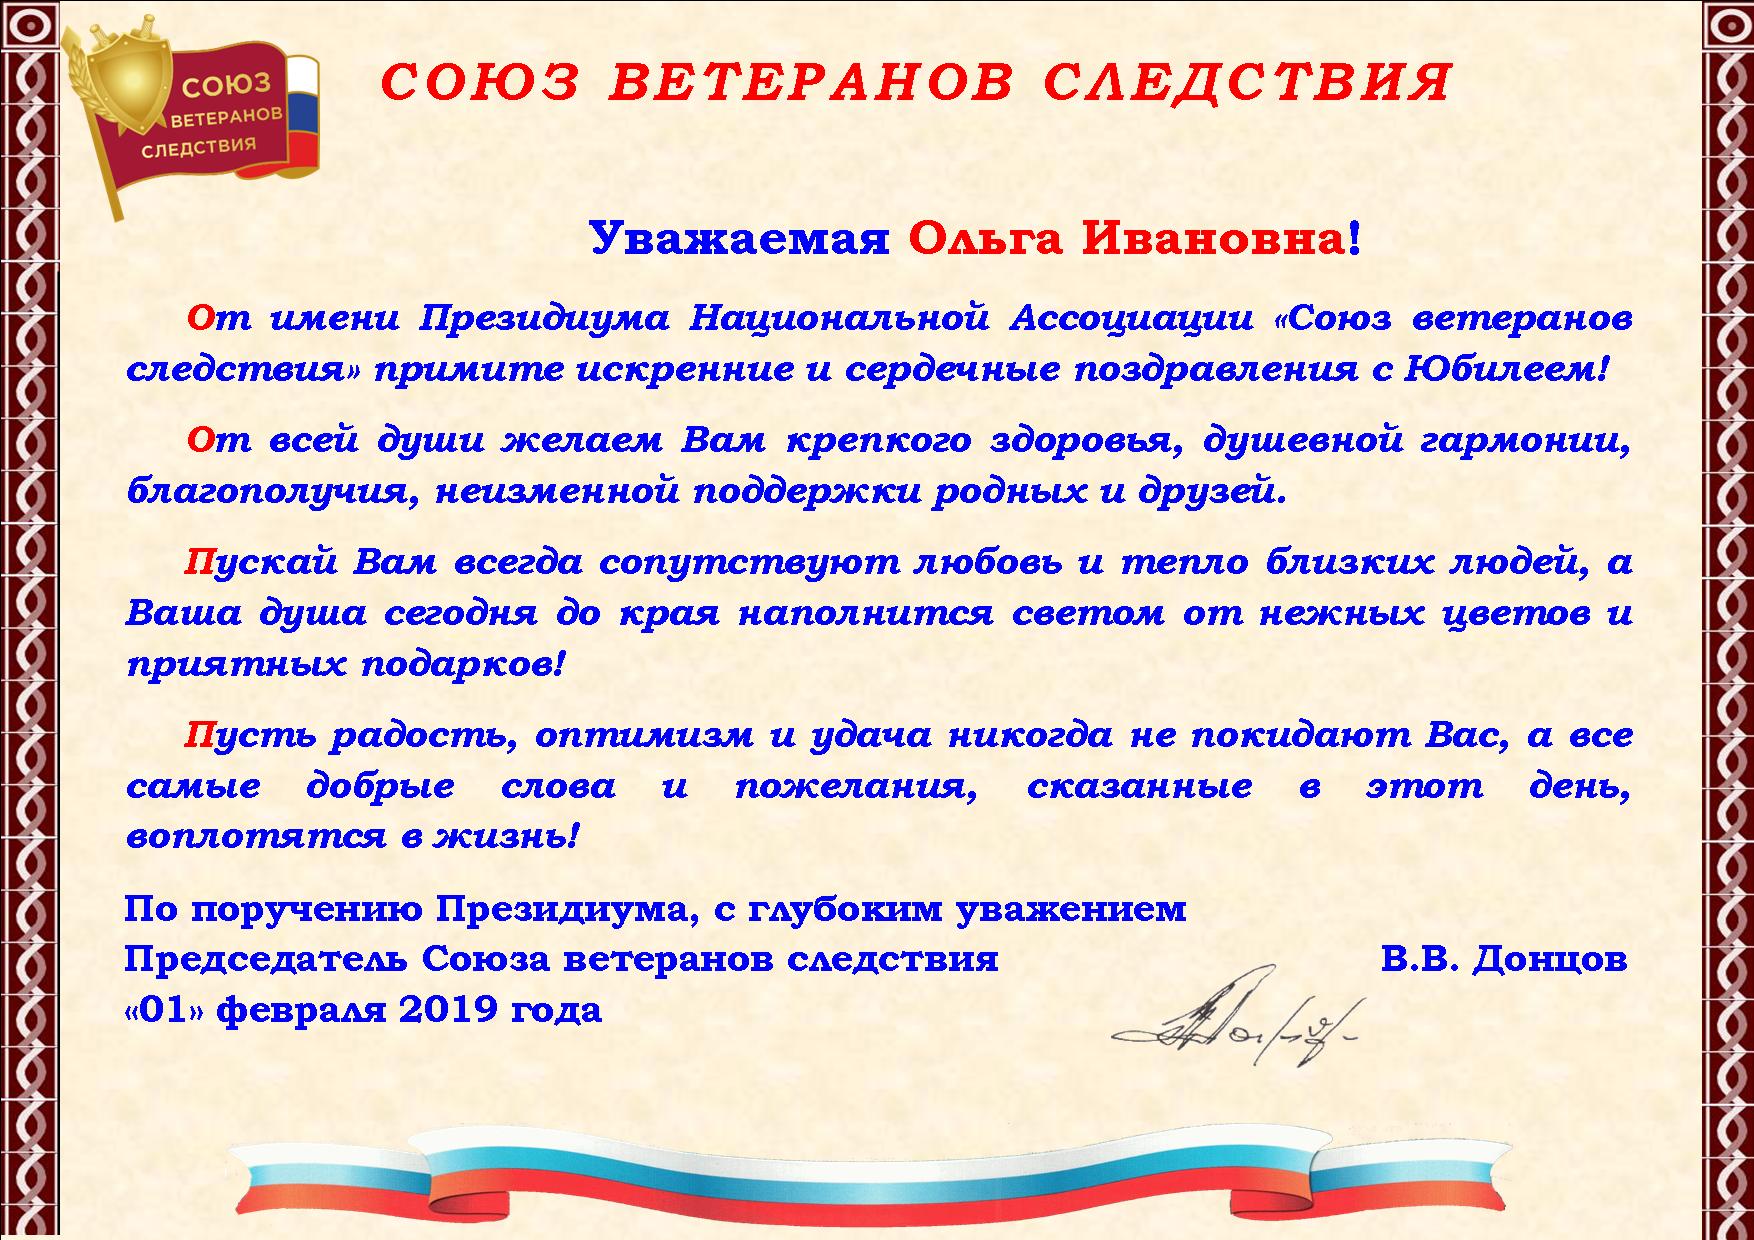 Служба Поздравлений С Днем Рождения Москва